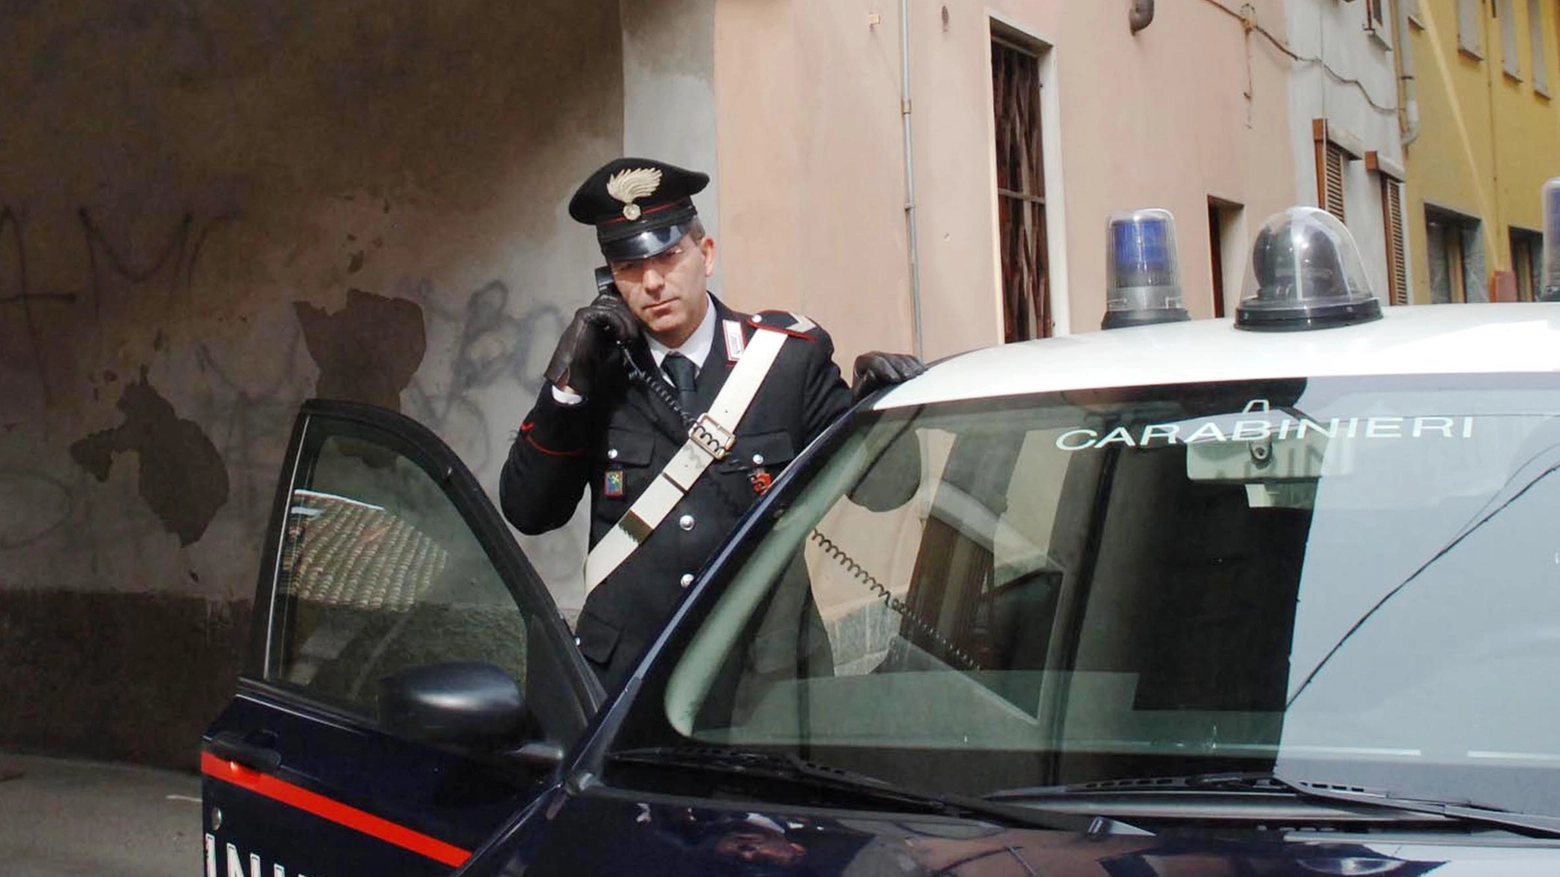 Il blitz è stato fatto dai carabinieri di Empoli